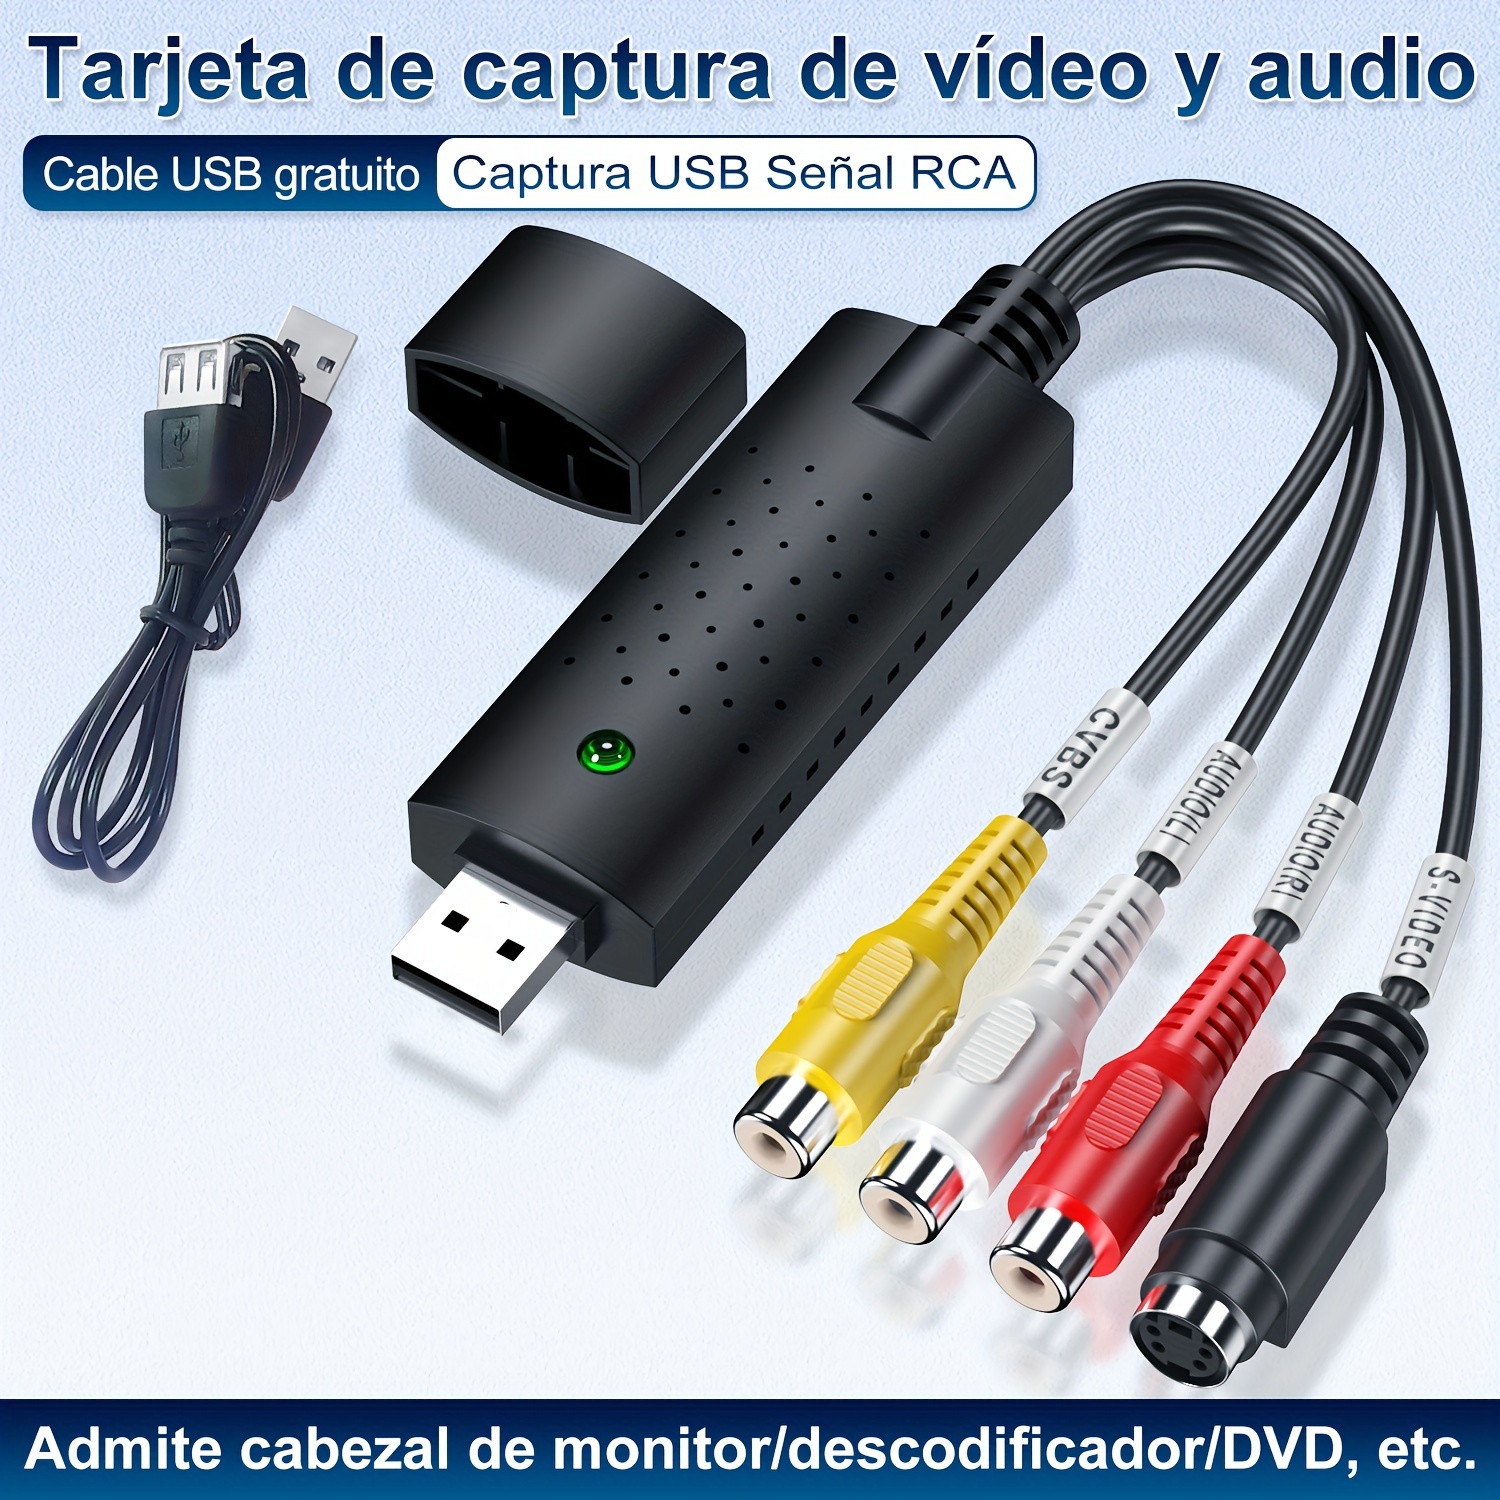 TRANSFER DE CASSETTE A USB - VIDEO GRABACIONES FOTOGRAFÍA